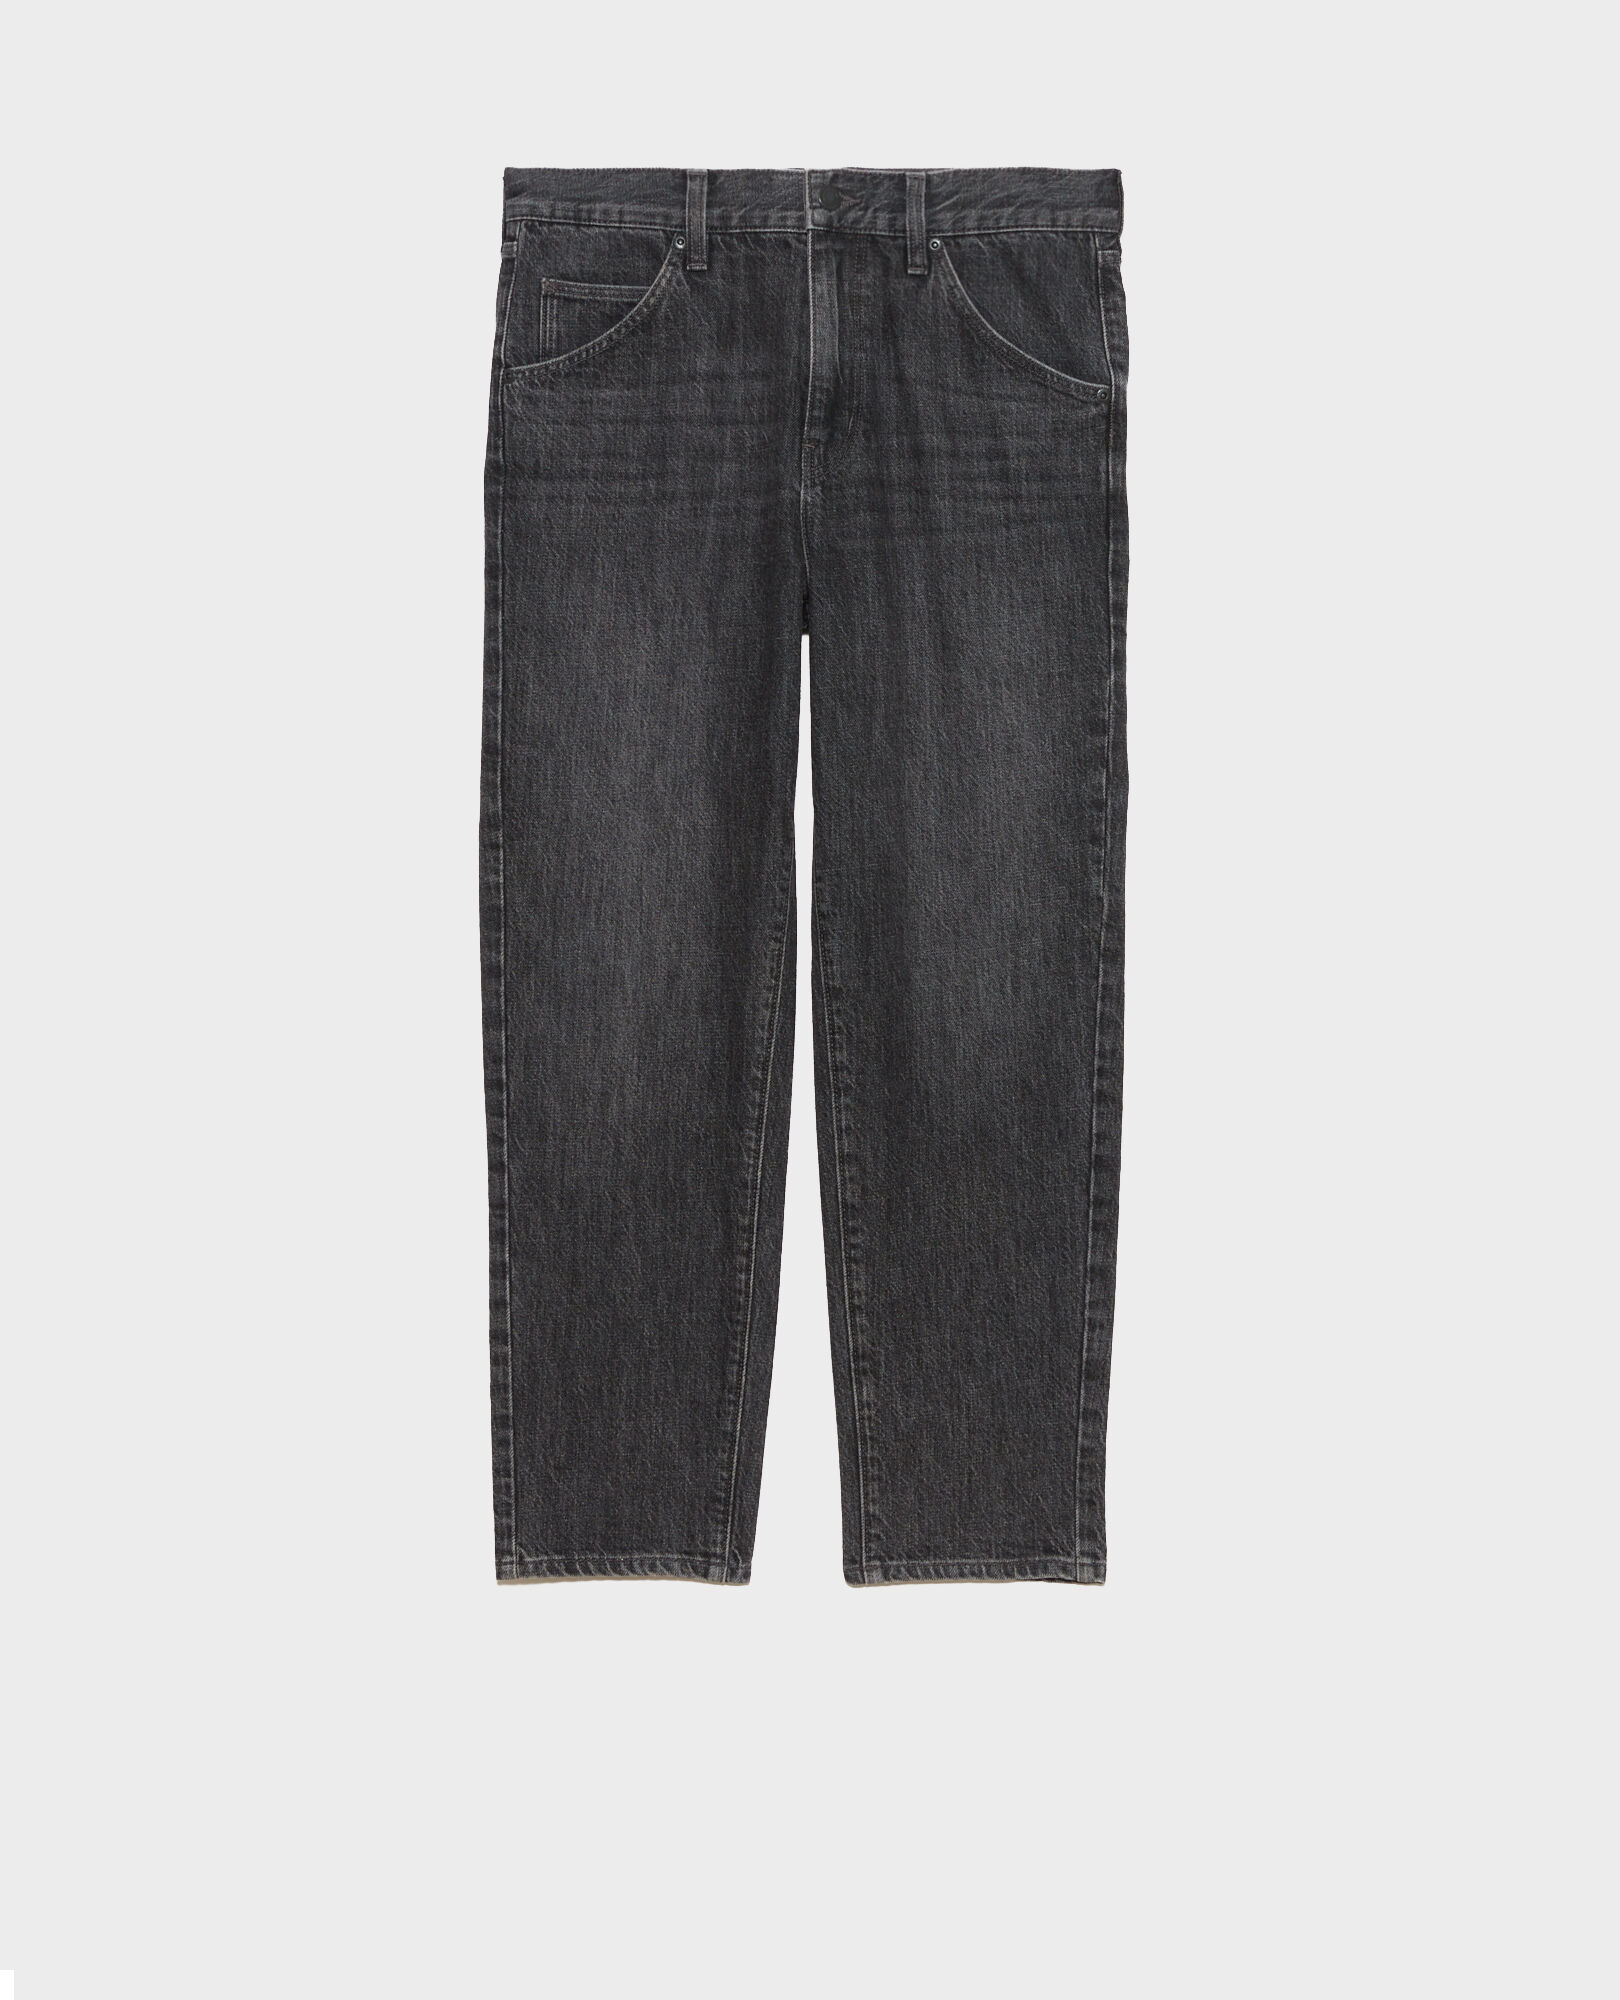 RITA - SLOUCHY - Jeans amplios talle bajo Vintage grey Perokey